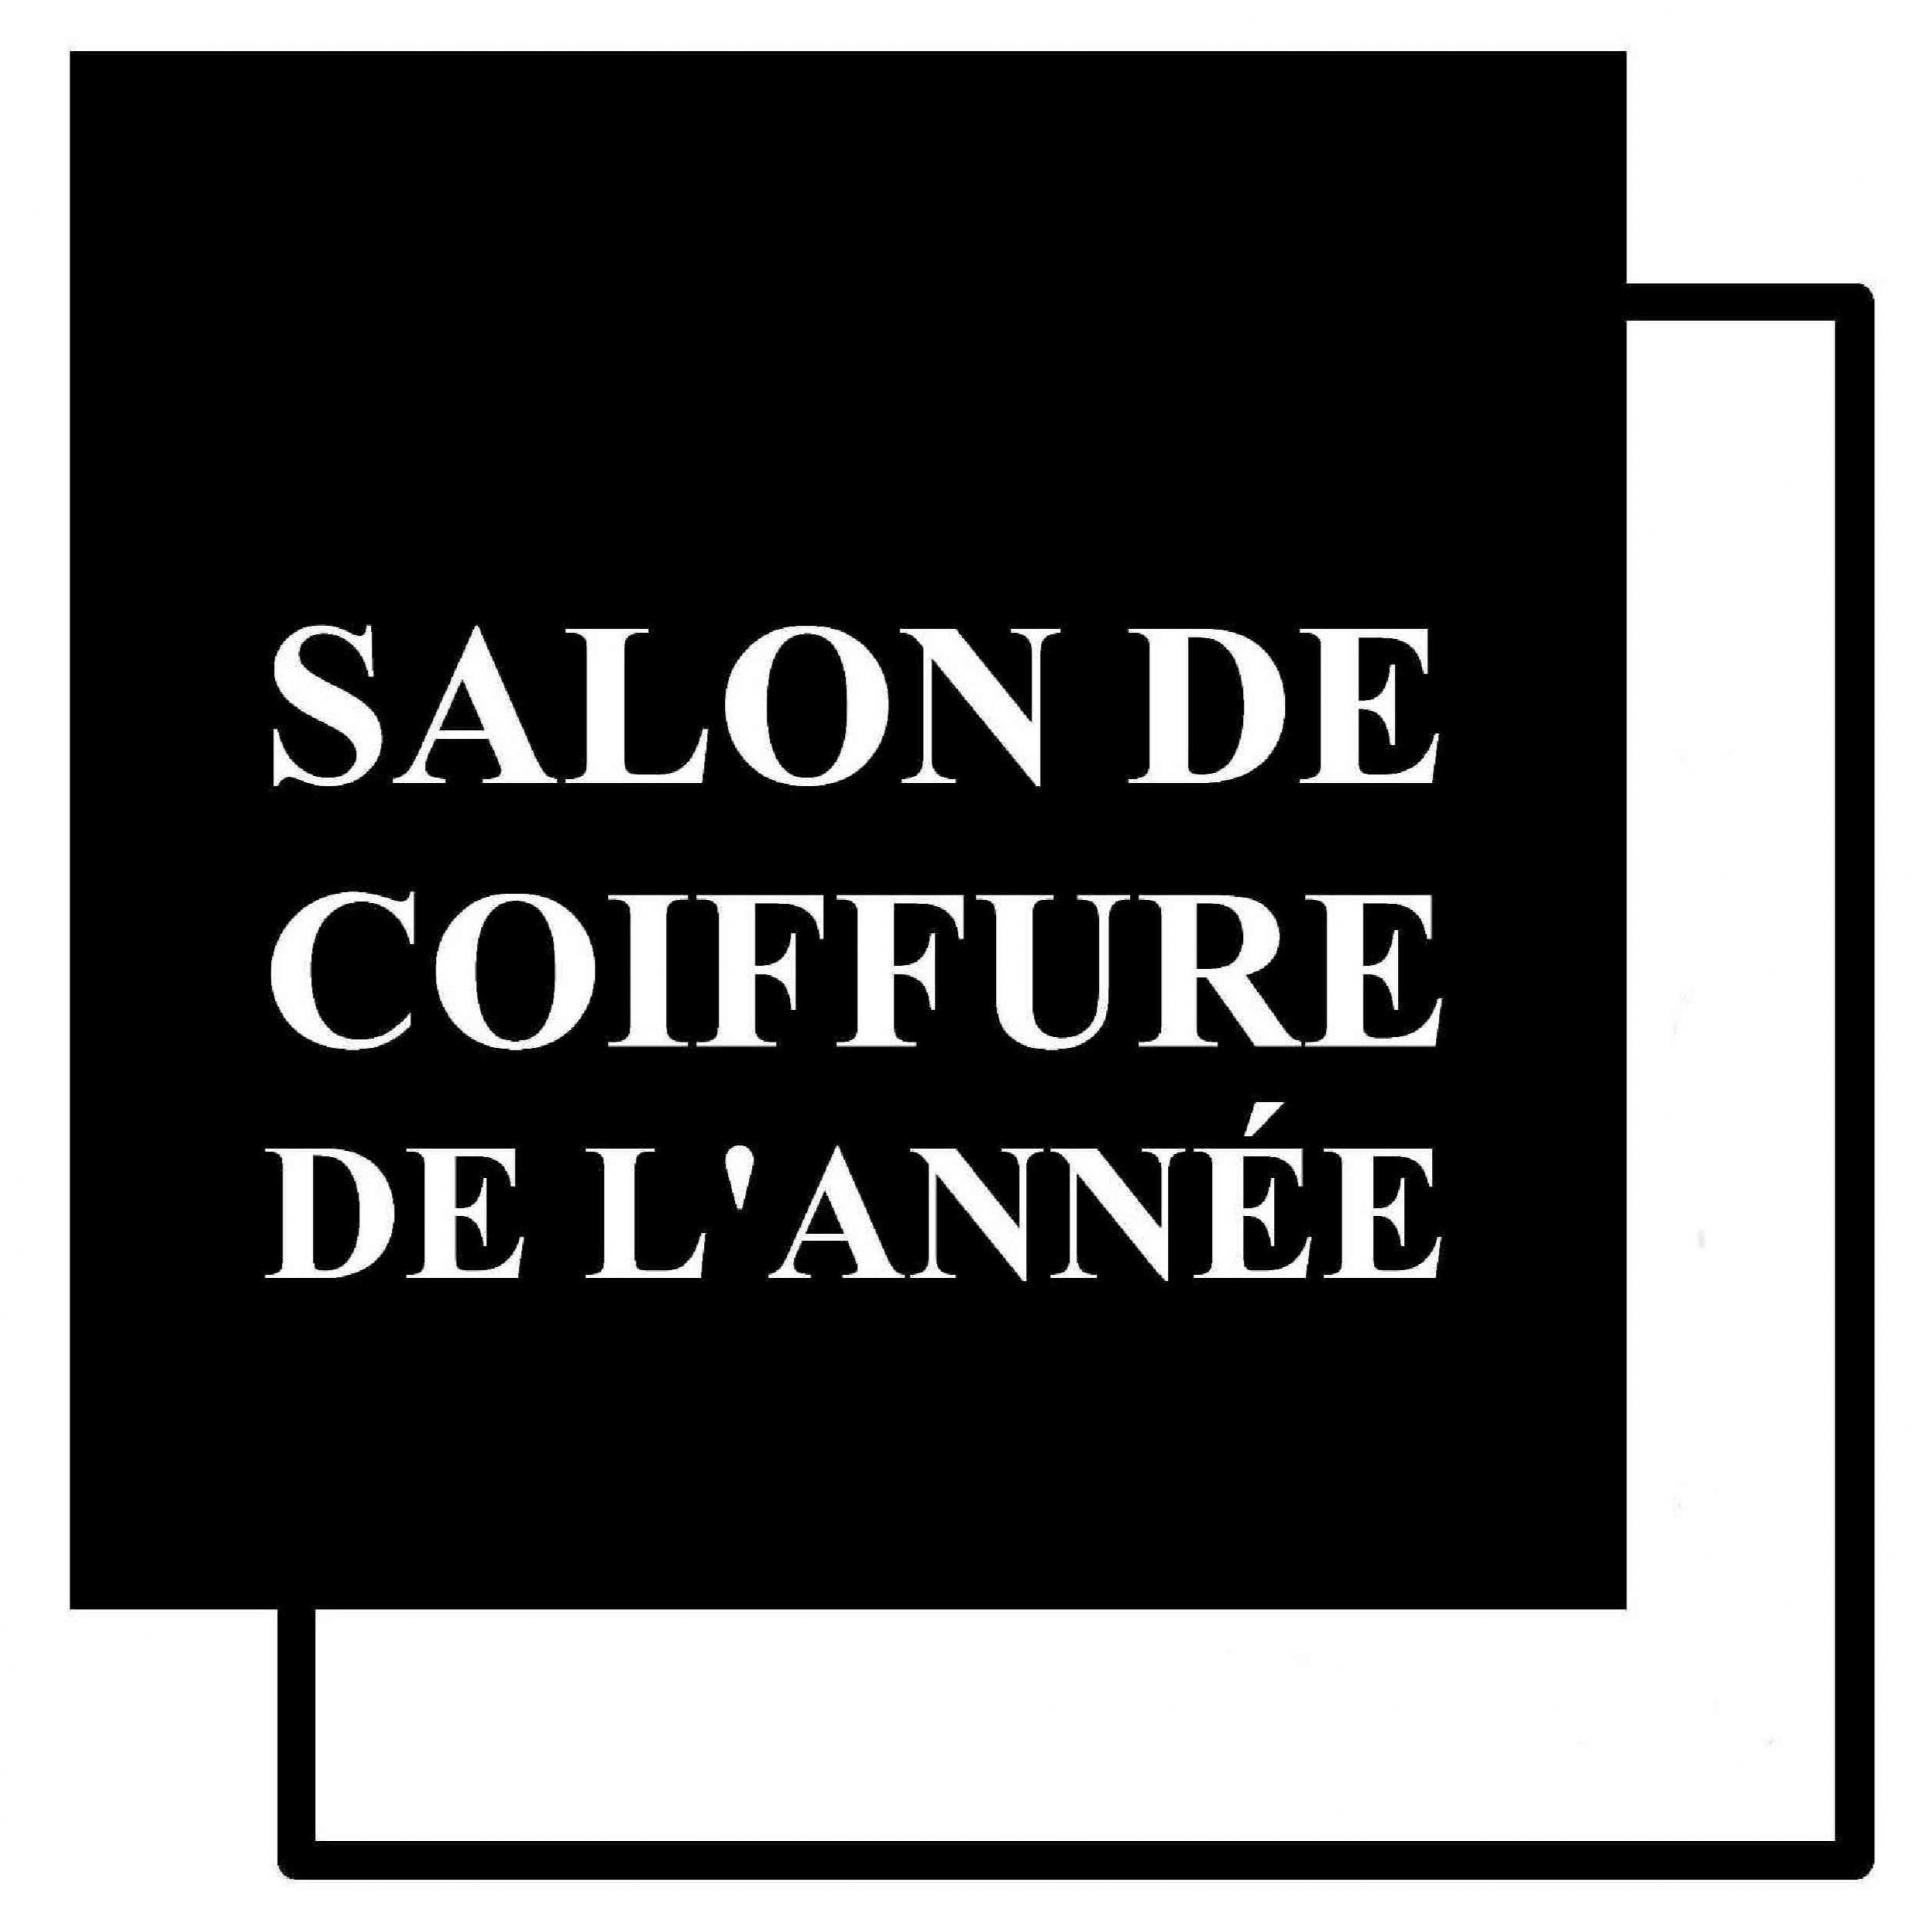 Salon de coiffure de l annee logo officiel copie